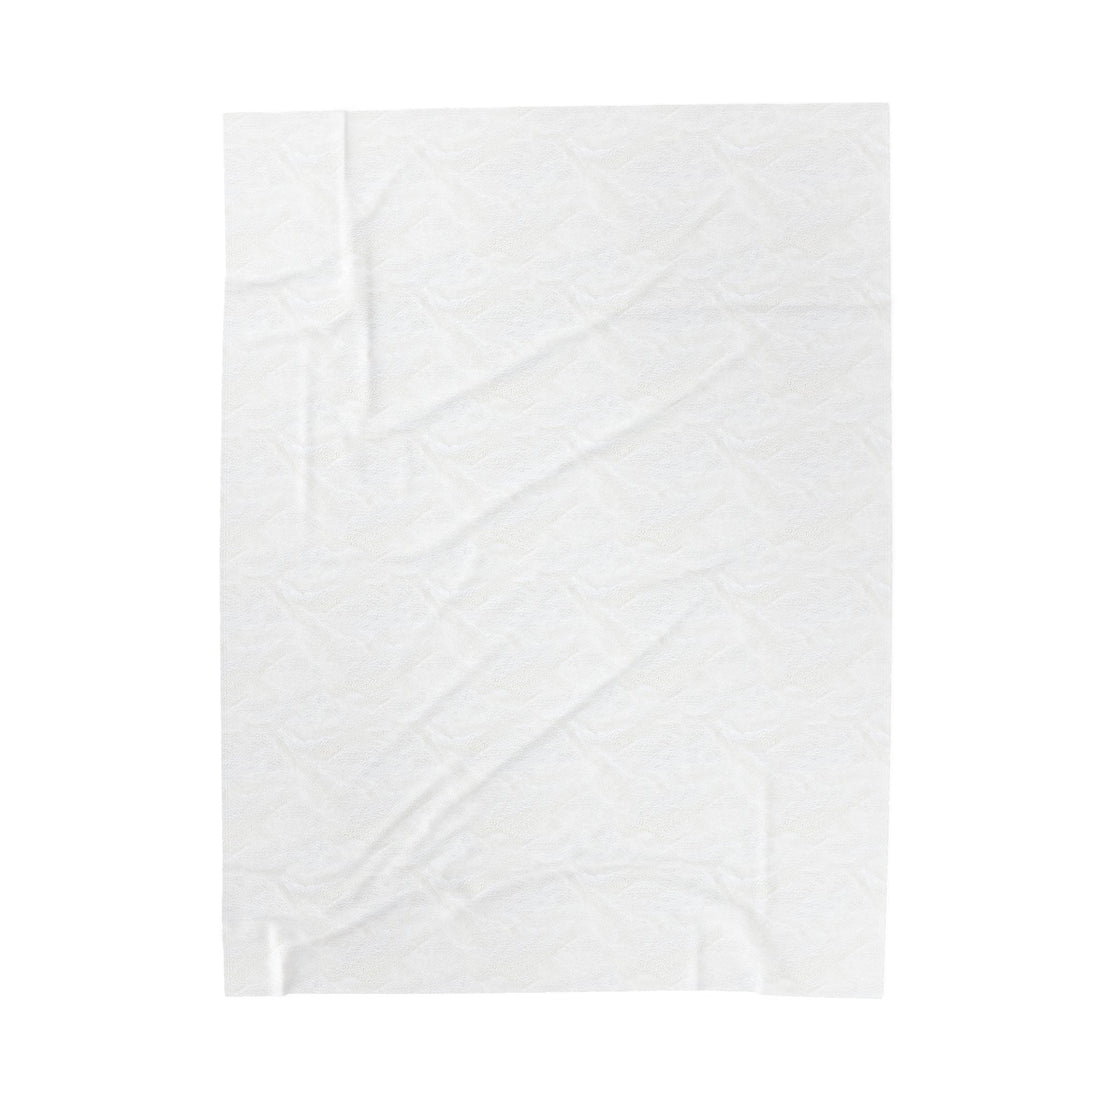 Oiler Pride Velveteen Plush Blanket - All Over Prints - Positively Sassy - Oiler Pride Velveteen Plush Blanket